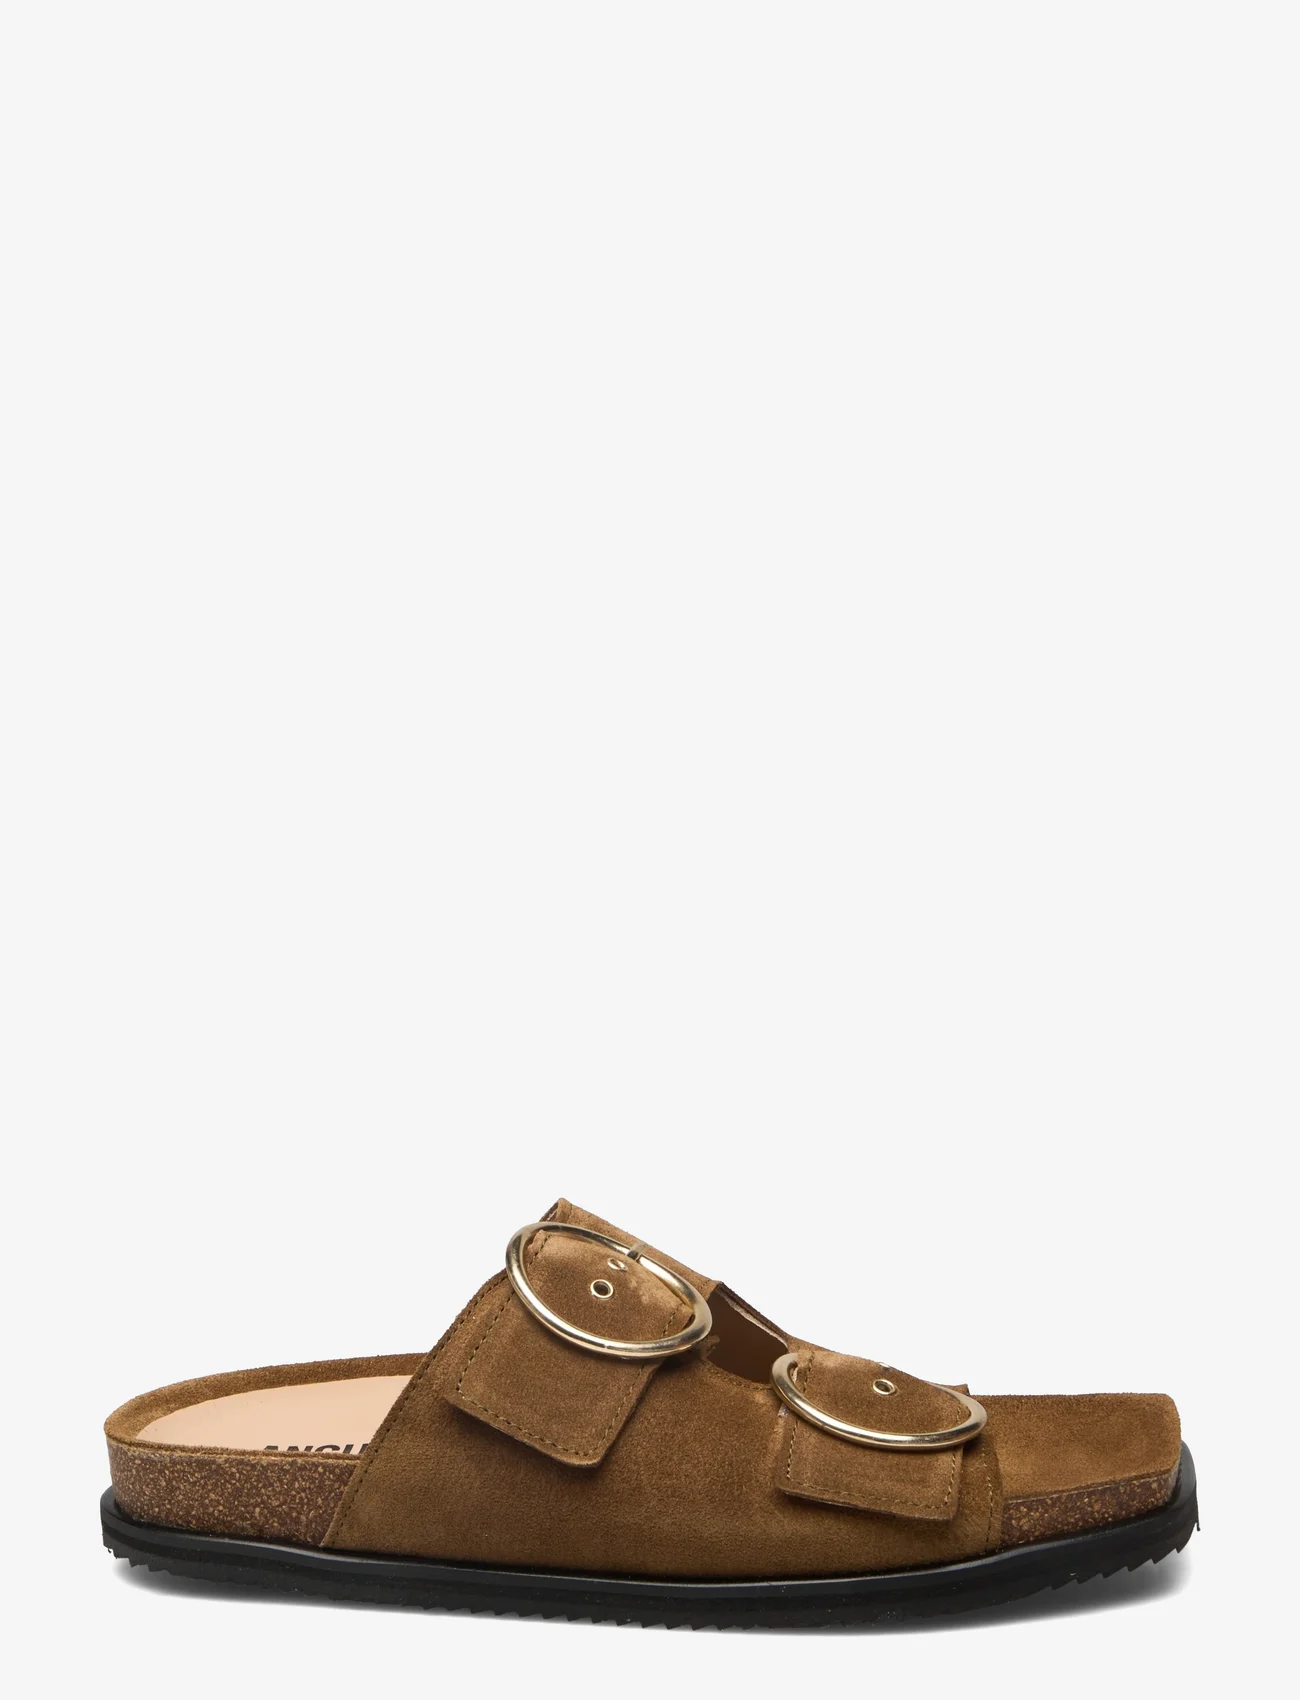 ANGULUS - Sandals - flat - open toe - op - flade sandaler - 2209 mustard - 1